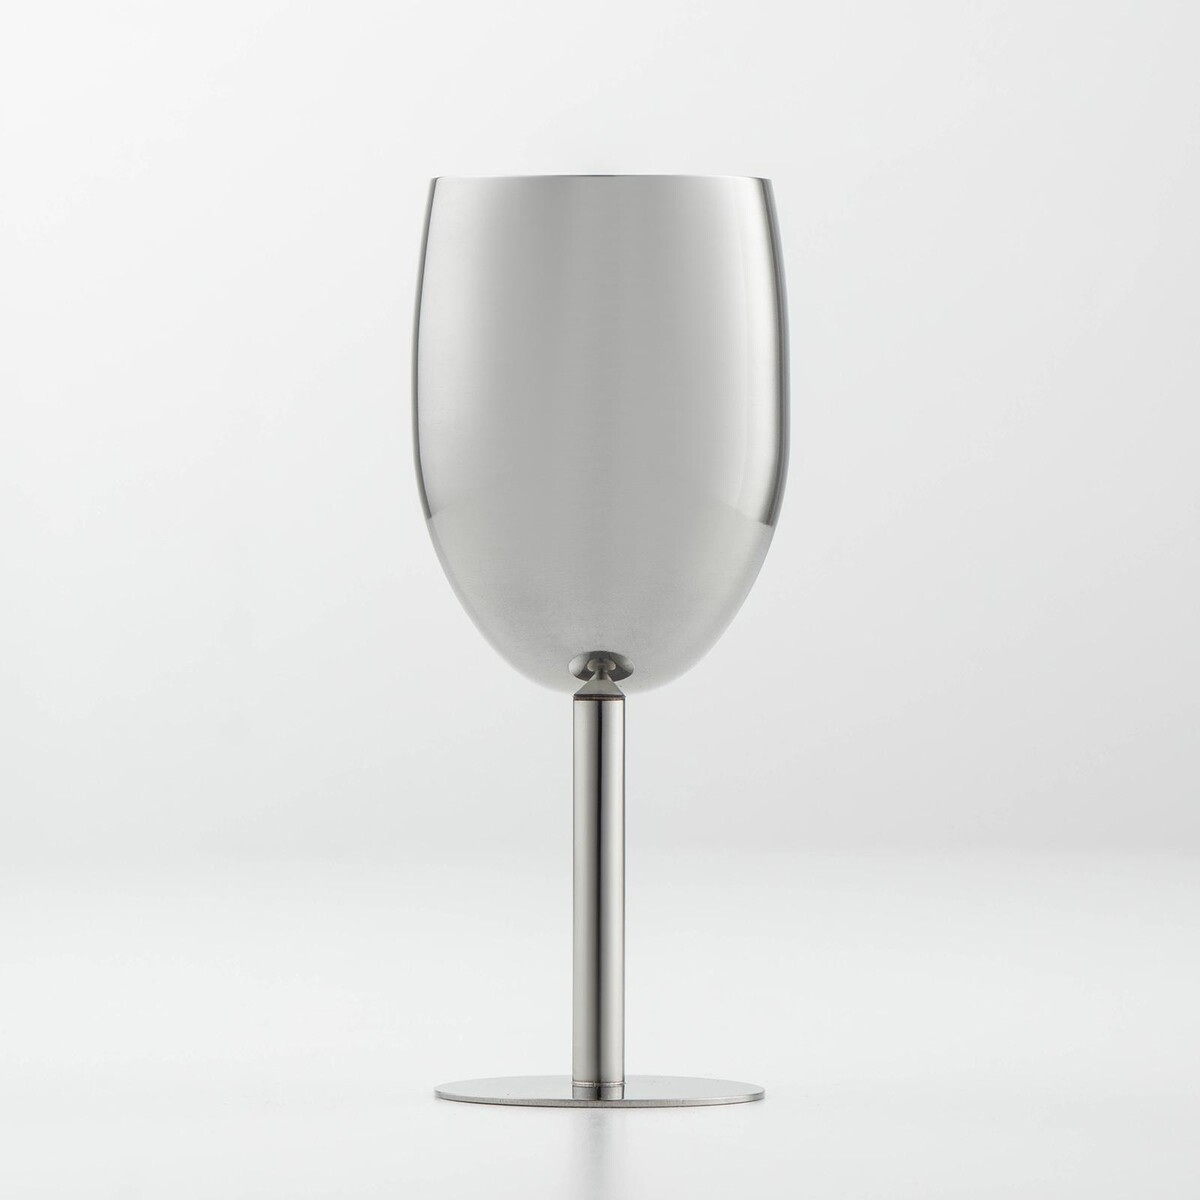 Бокал винный из нержавеющей стали для коктейлей, 17×7 см, цвет хромированный бокал для мартини стеклянный enoteca 215 мл